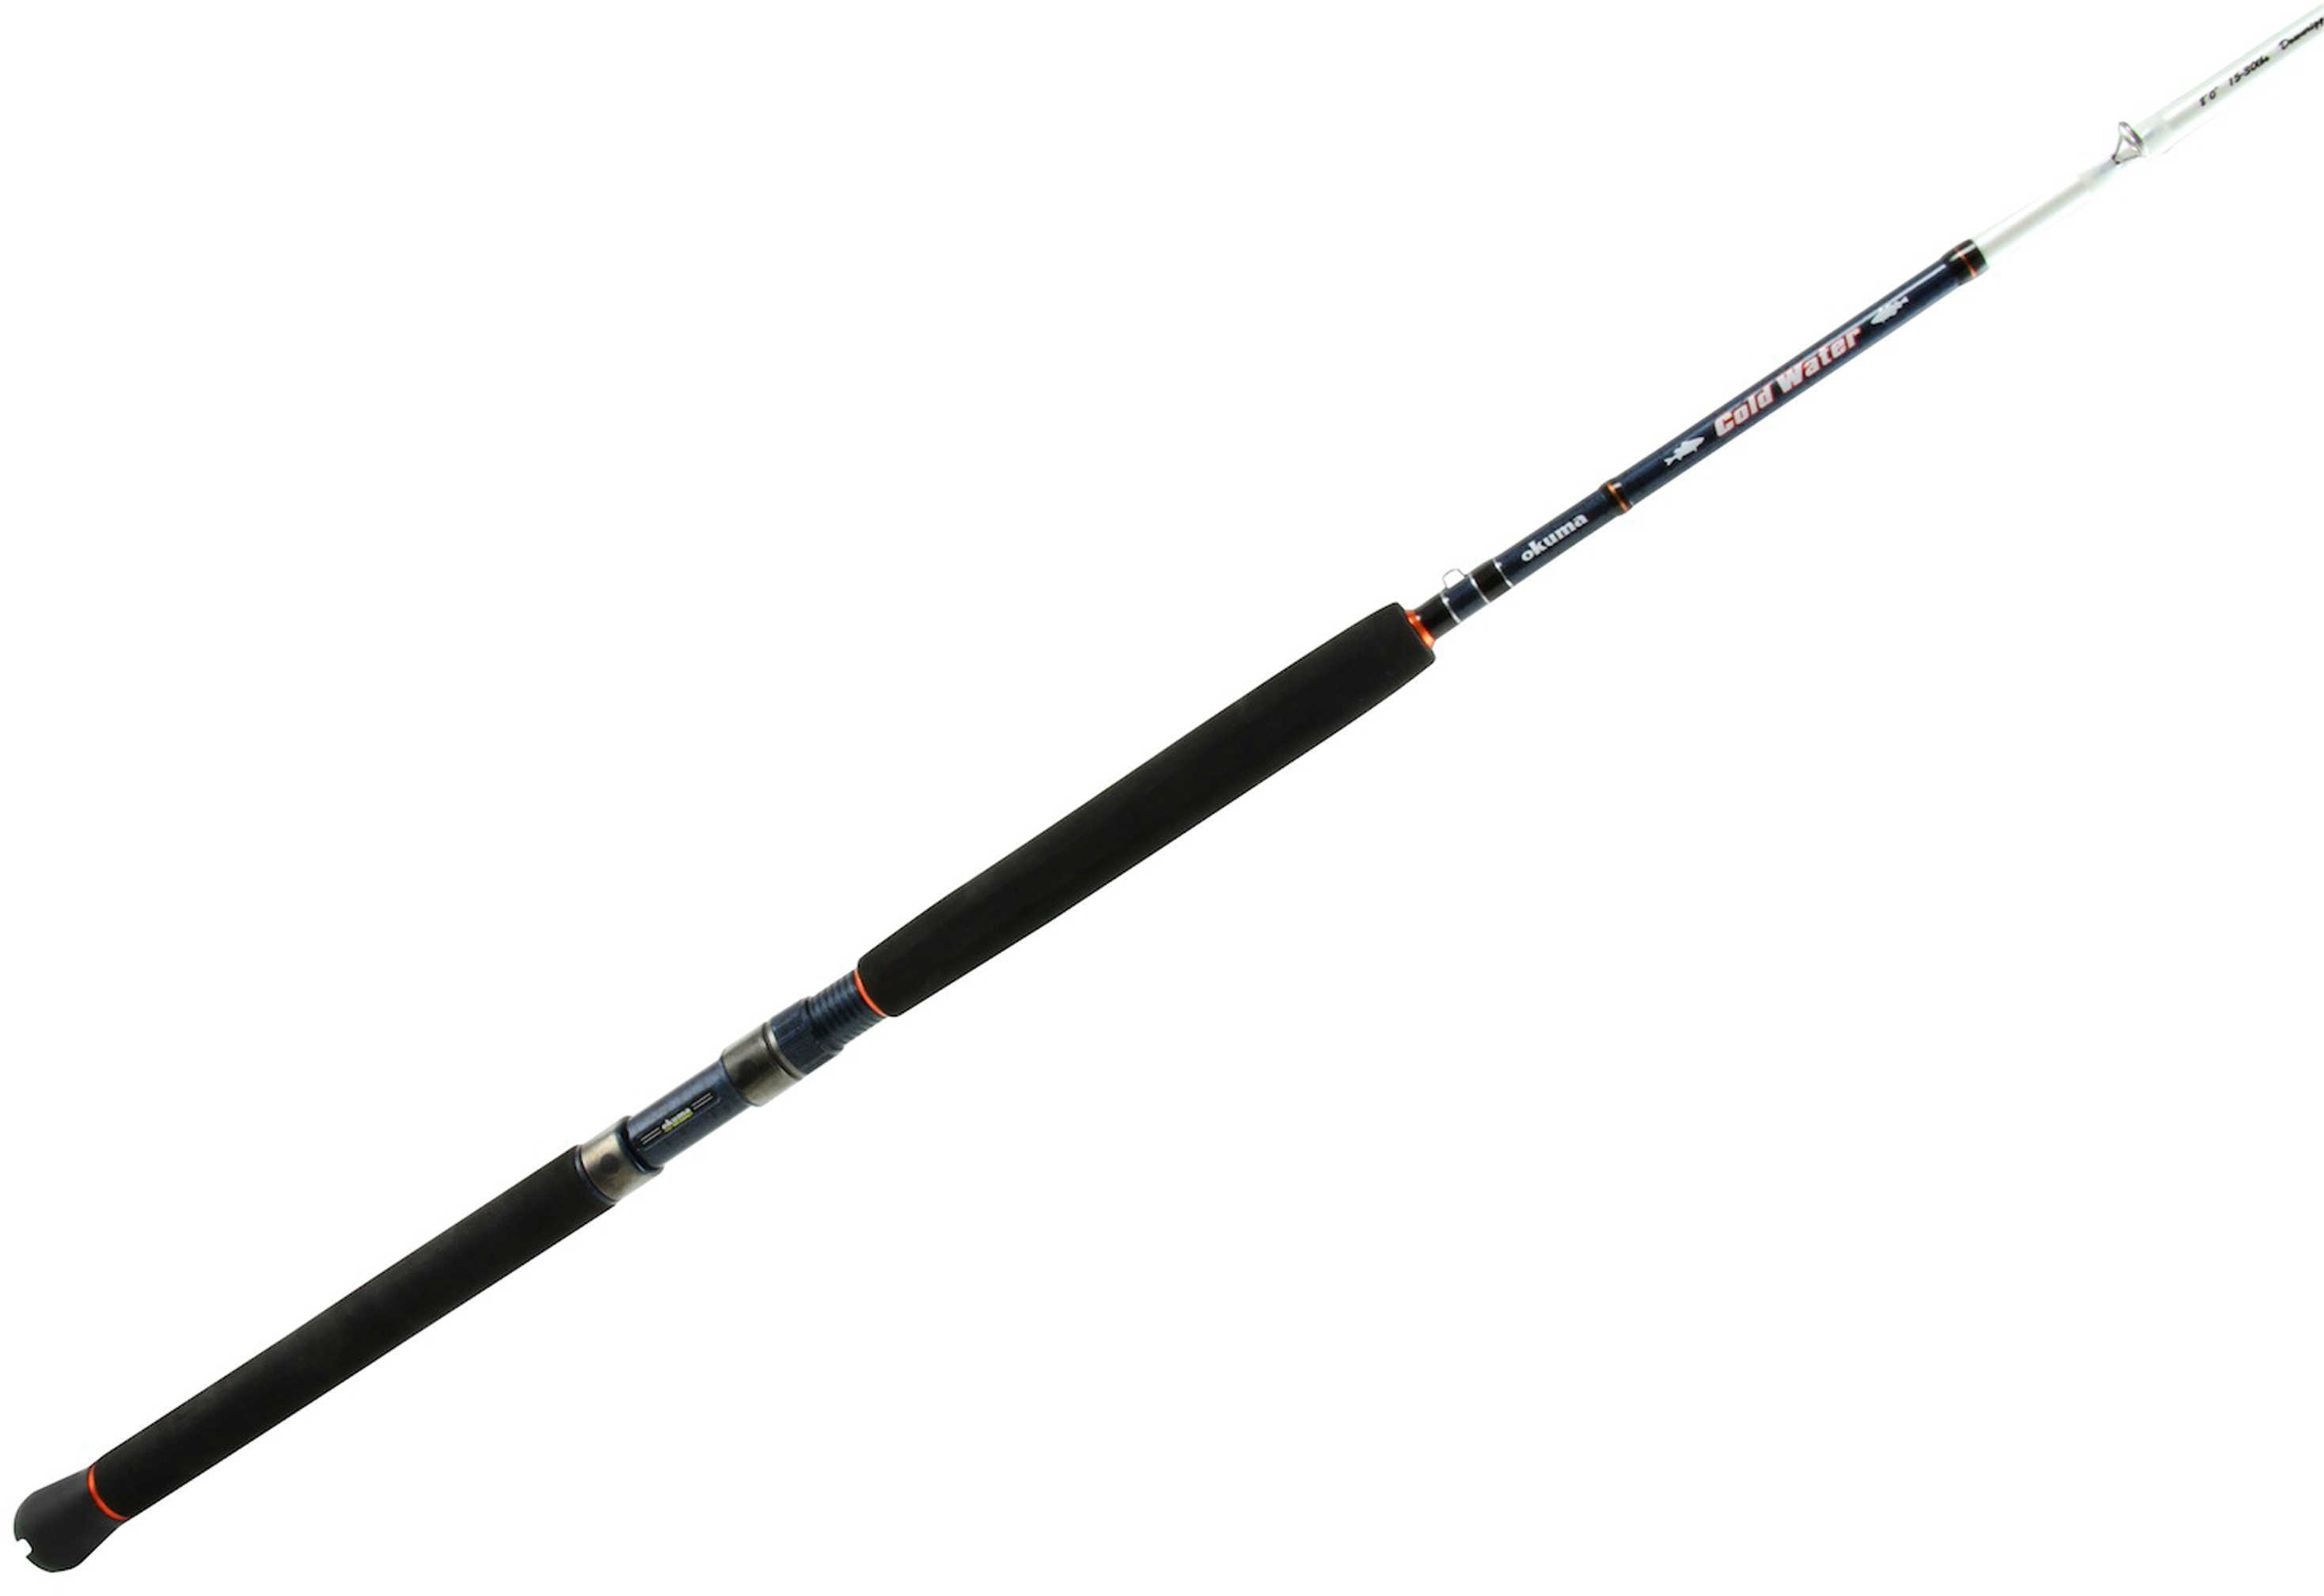 Okuma Cold Water Troll Rod 8'6" Medium/Heavy 2 Piece Md: CW-C-862MH